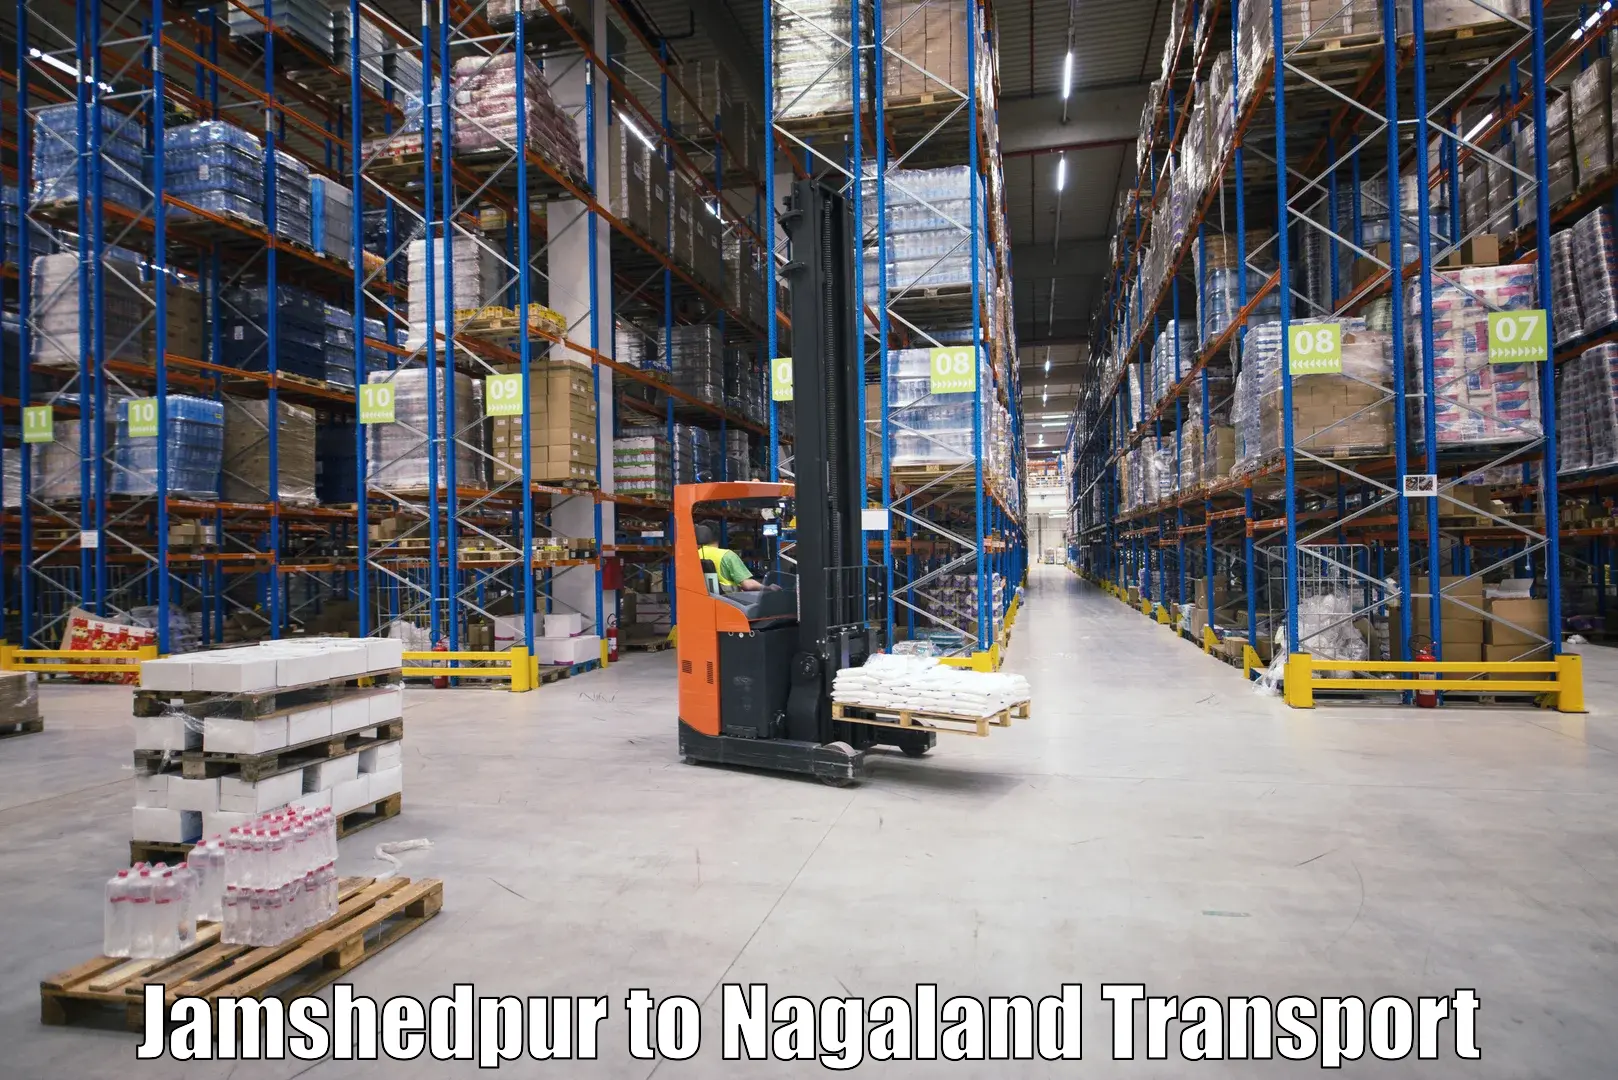 Express transport services Jamshedpur to Nagaland